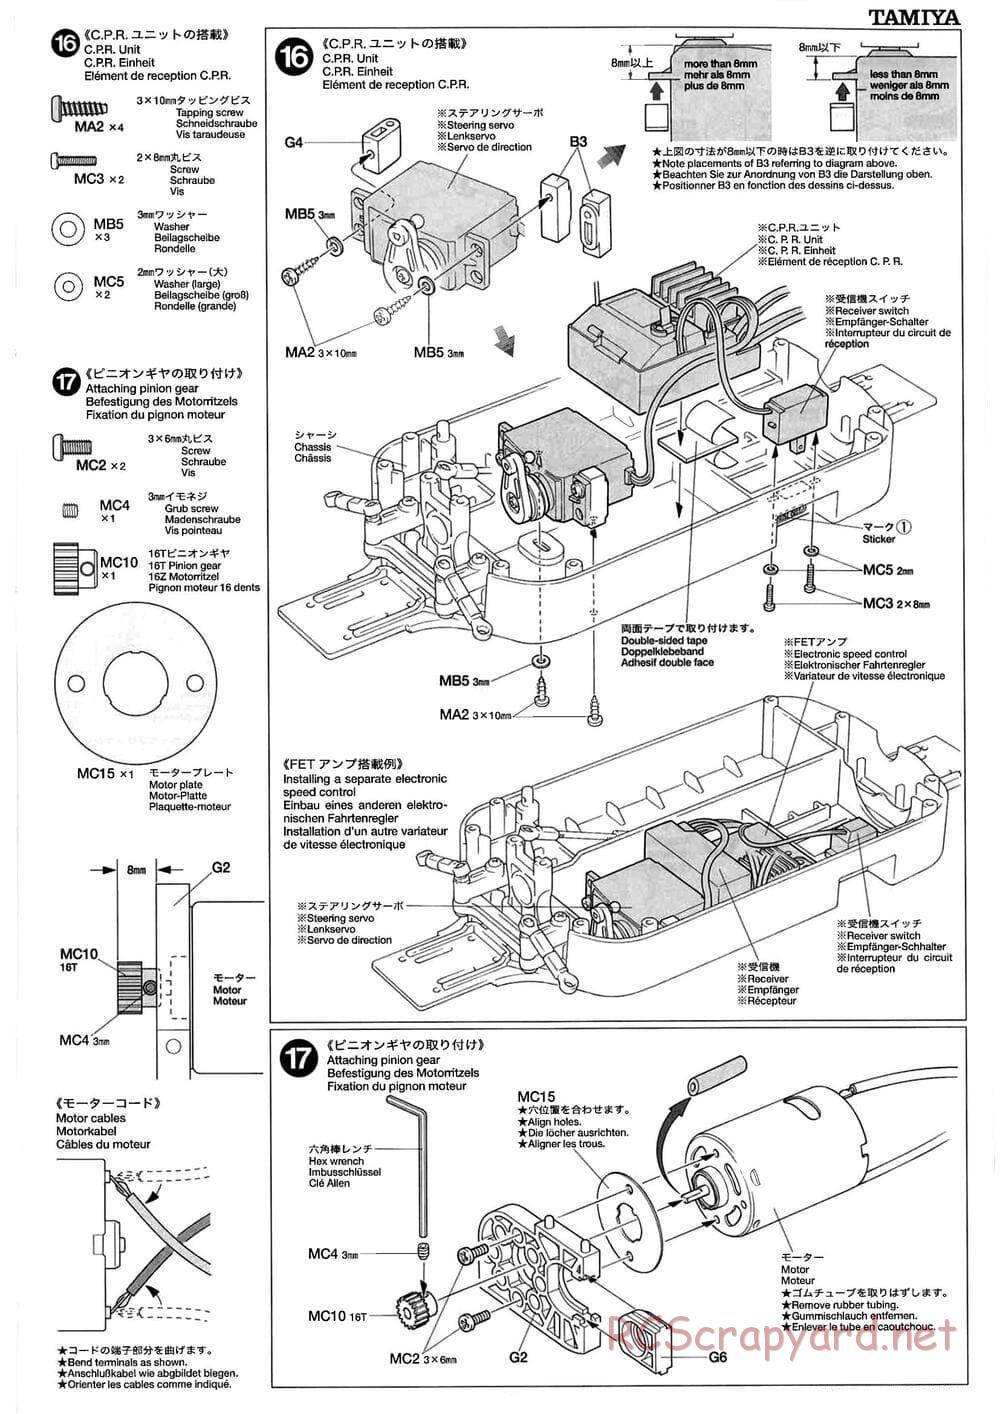 Tamiya - TB-01 Chassis - Manual - Page 9